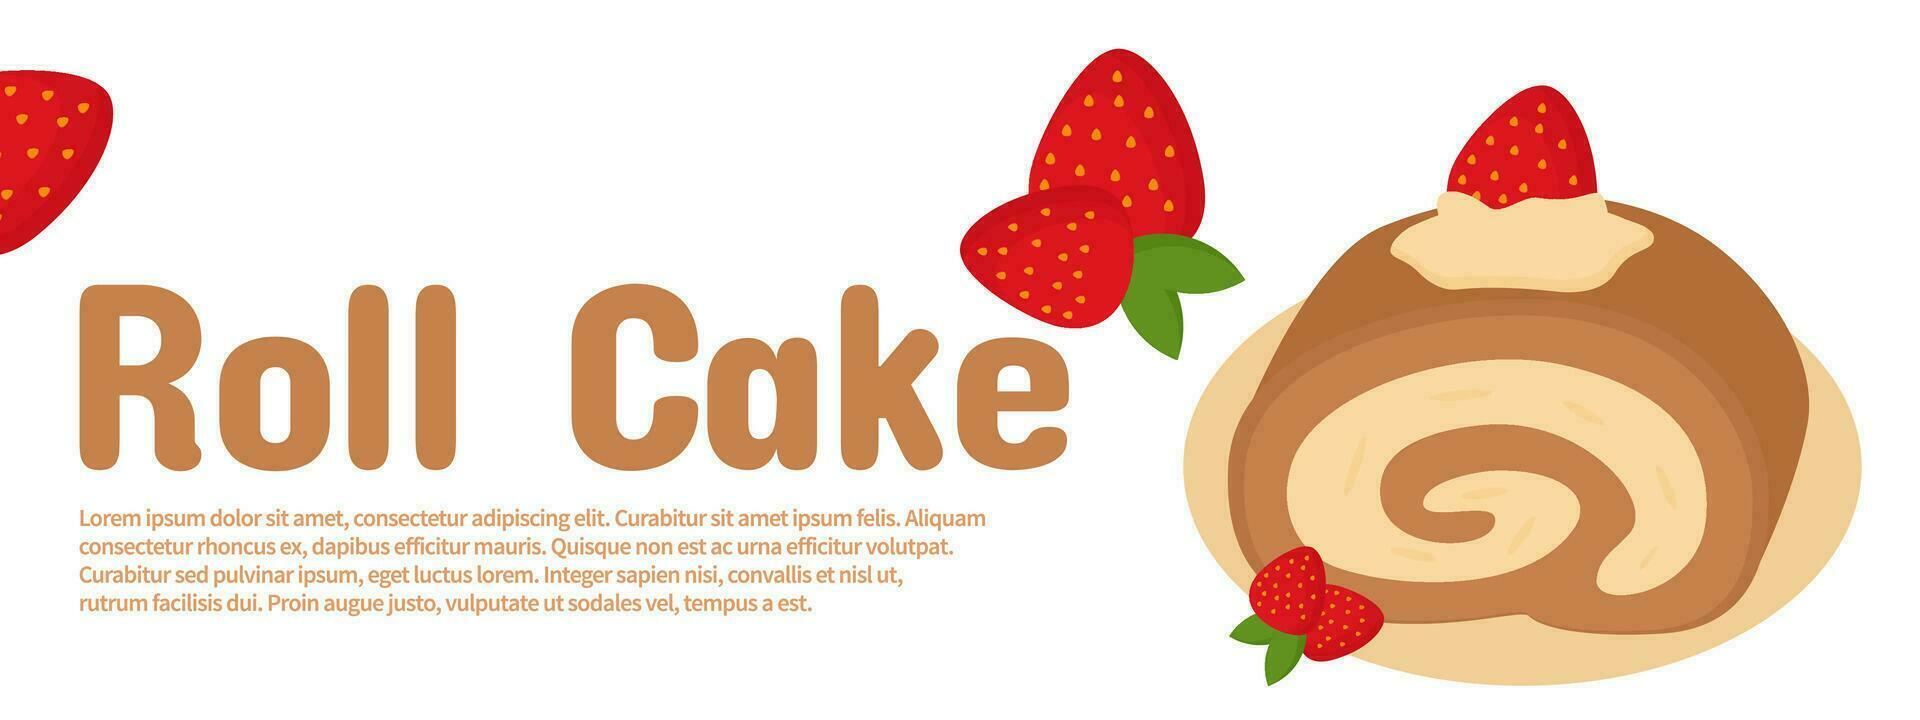 promocional bandera para arrollado esponja pastel con un plano ilustración de linda arrollado esponja pastel para un panadería tienda vector